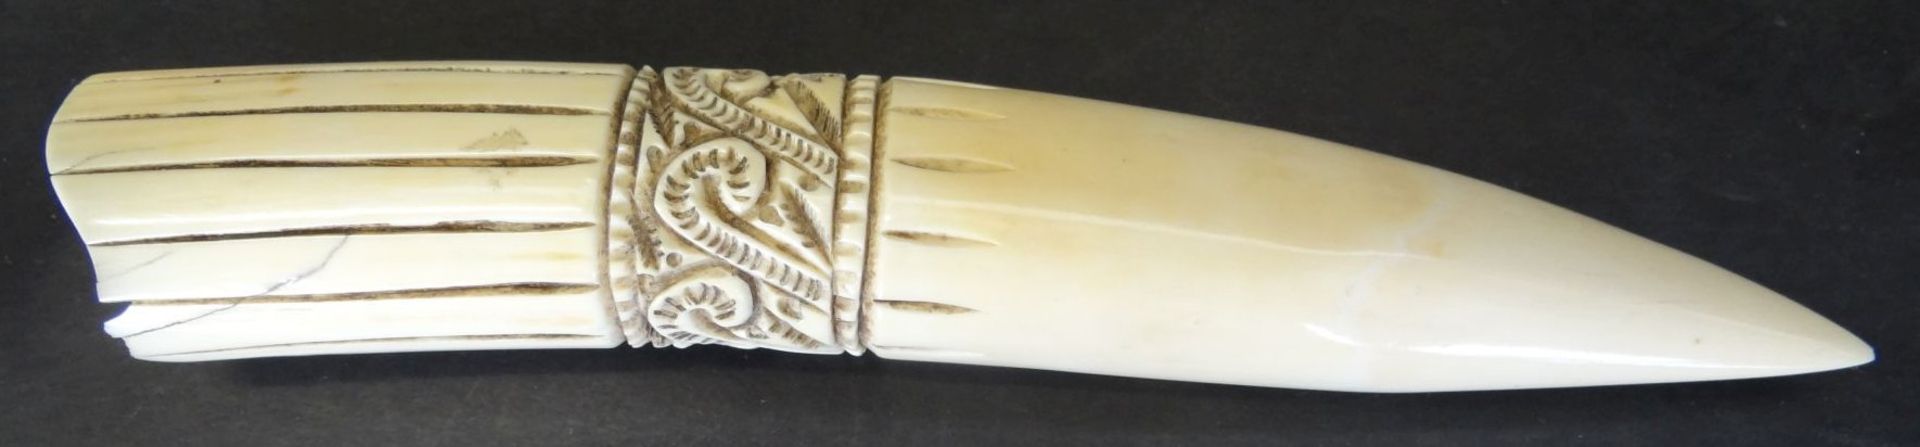 beschnitzter Walross-Zahn, , L-18 cm, Altersspuren, - Bild 2 aus 4